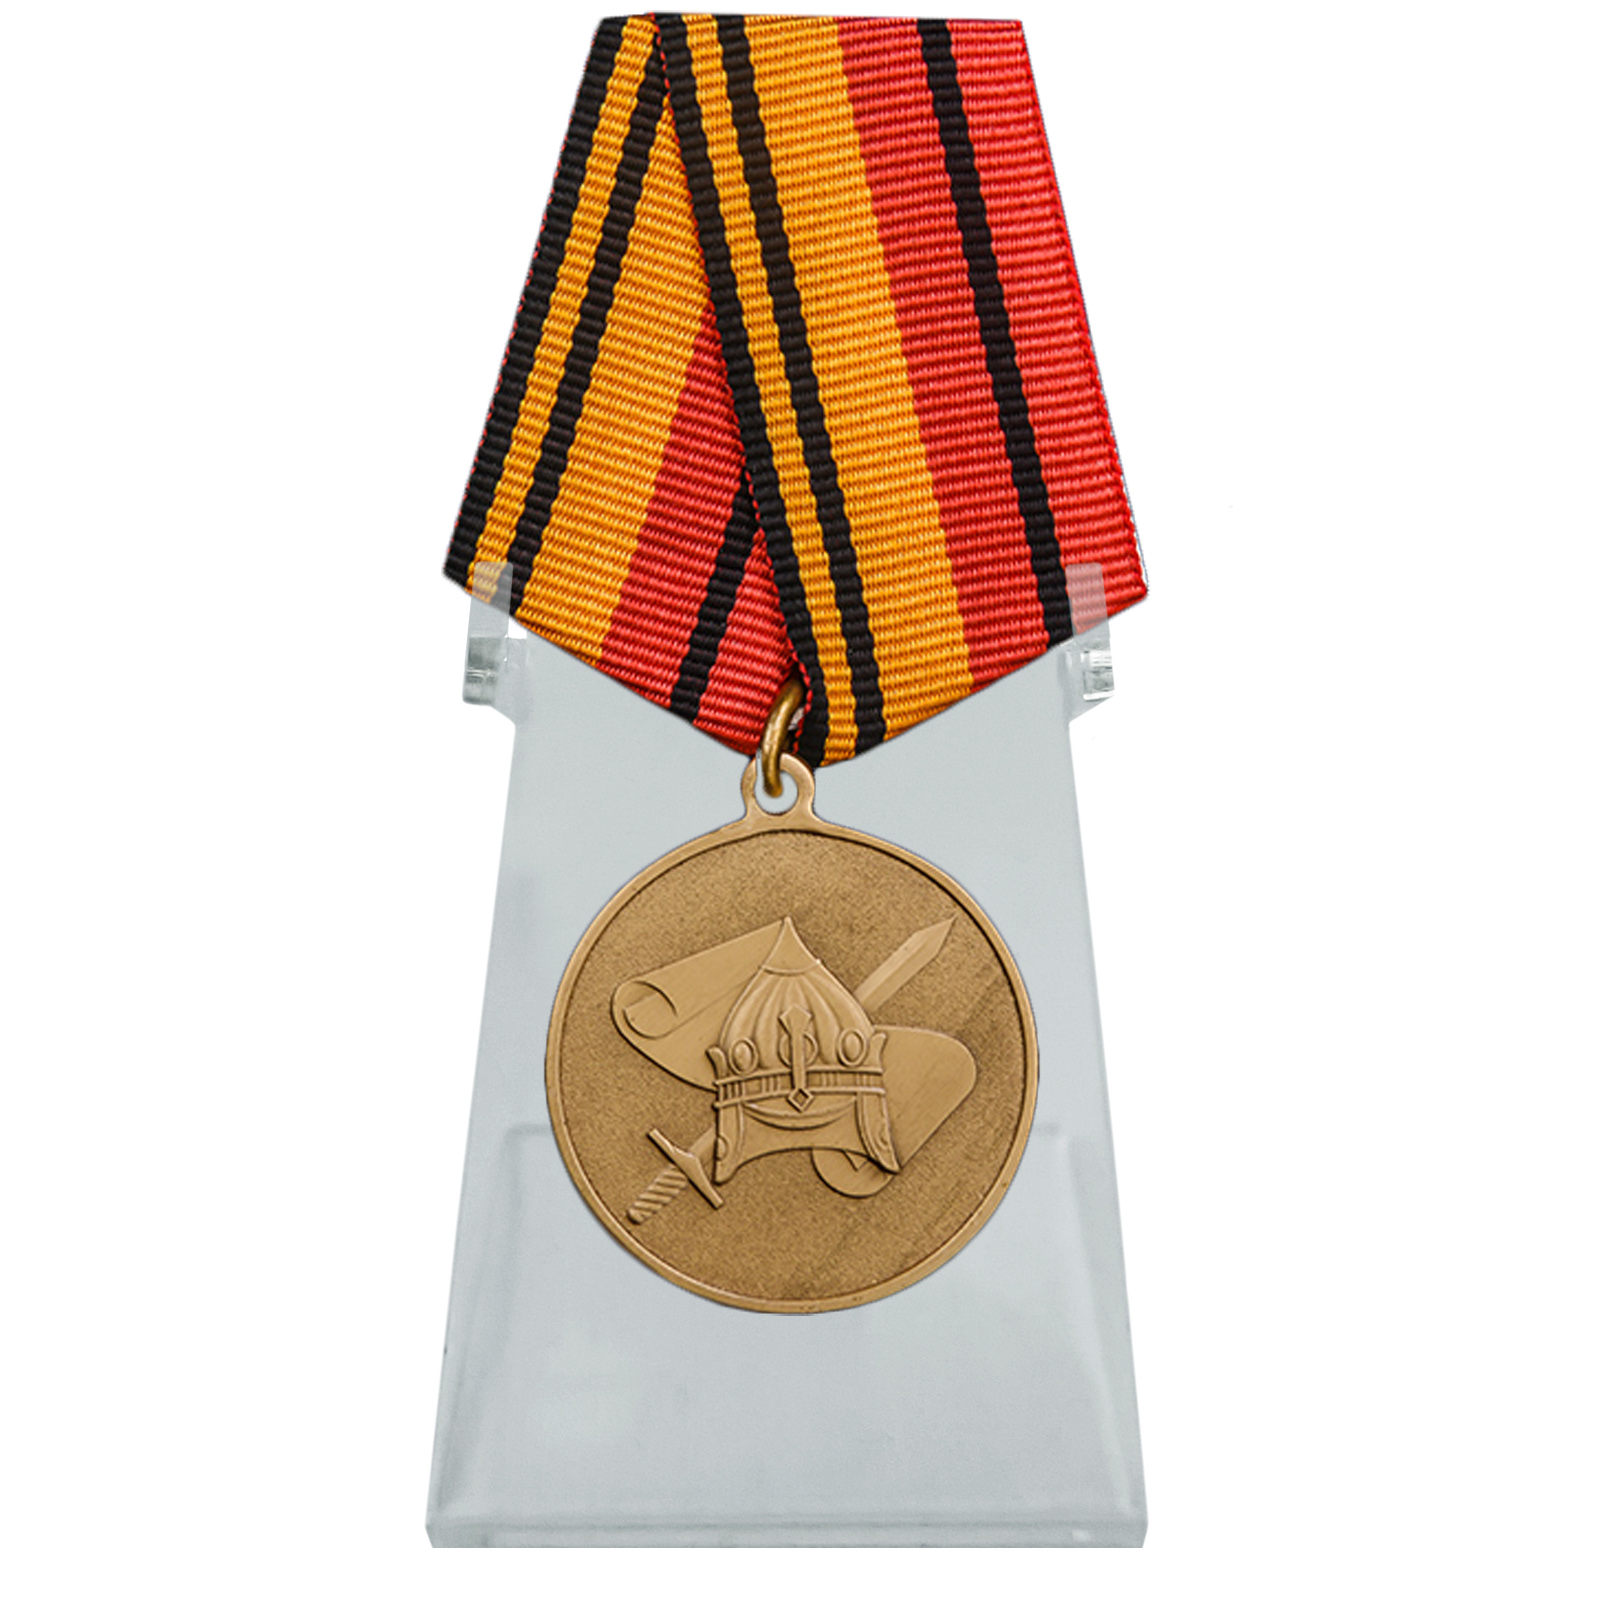 Медаль "200 лет Военно-научному комитету ВС РФ" на подставке